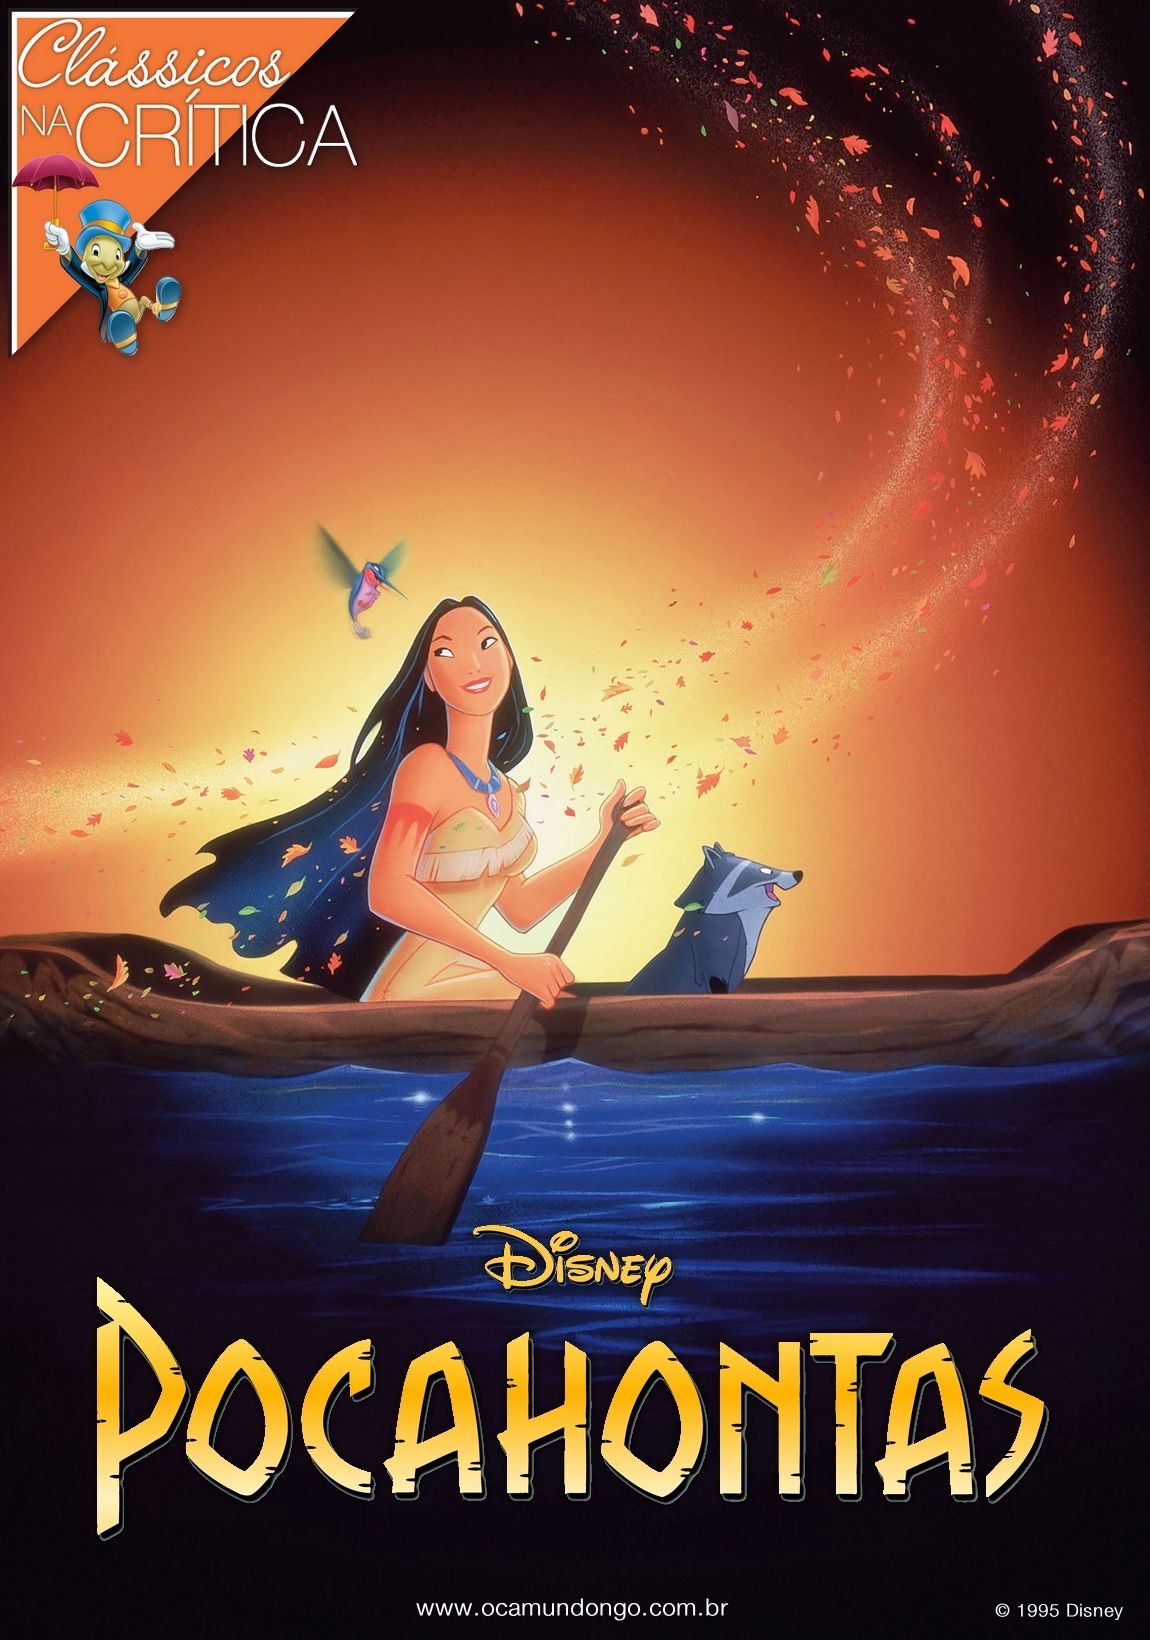 O que quer dizer a palavra Pocahontas?